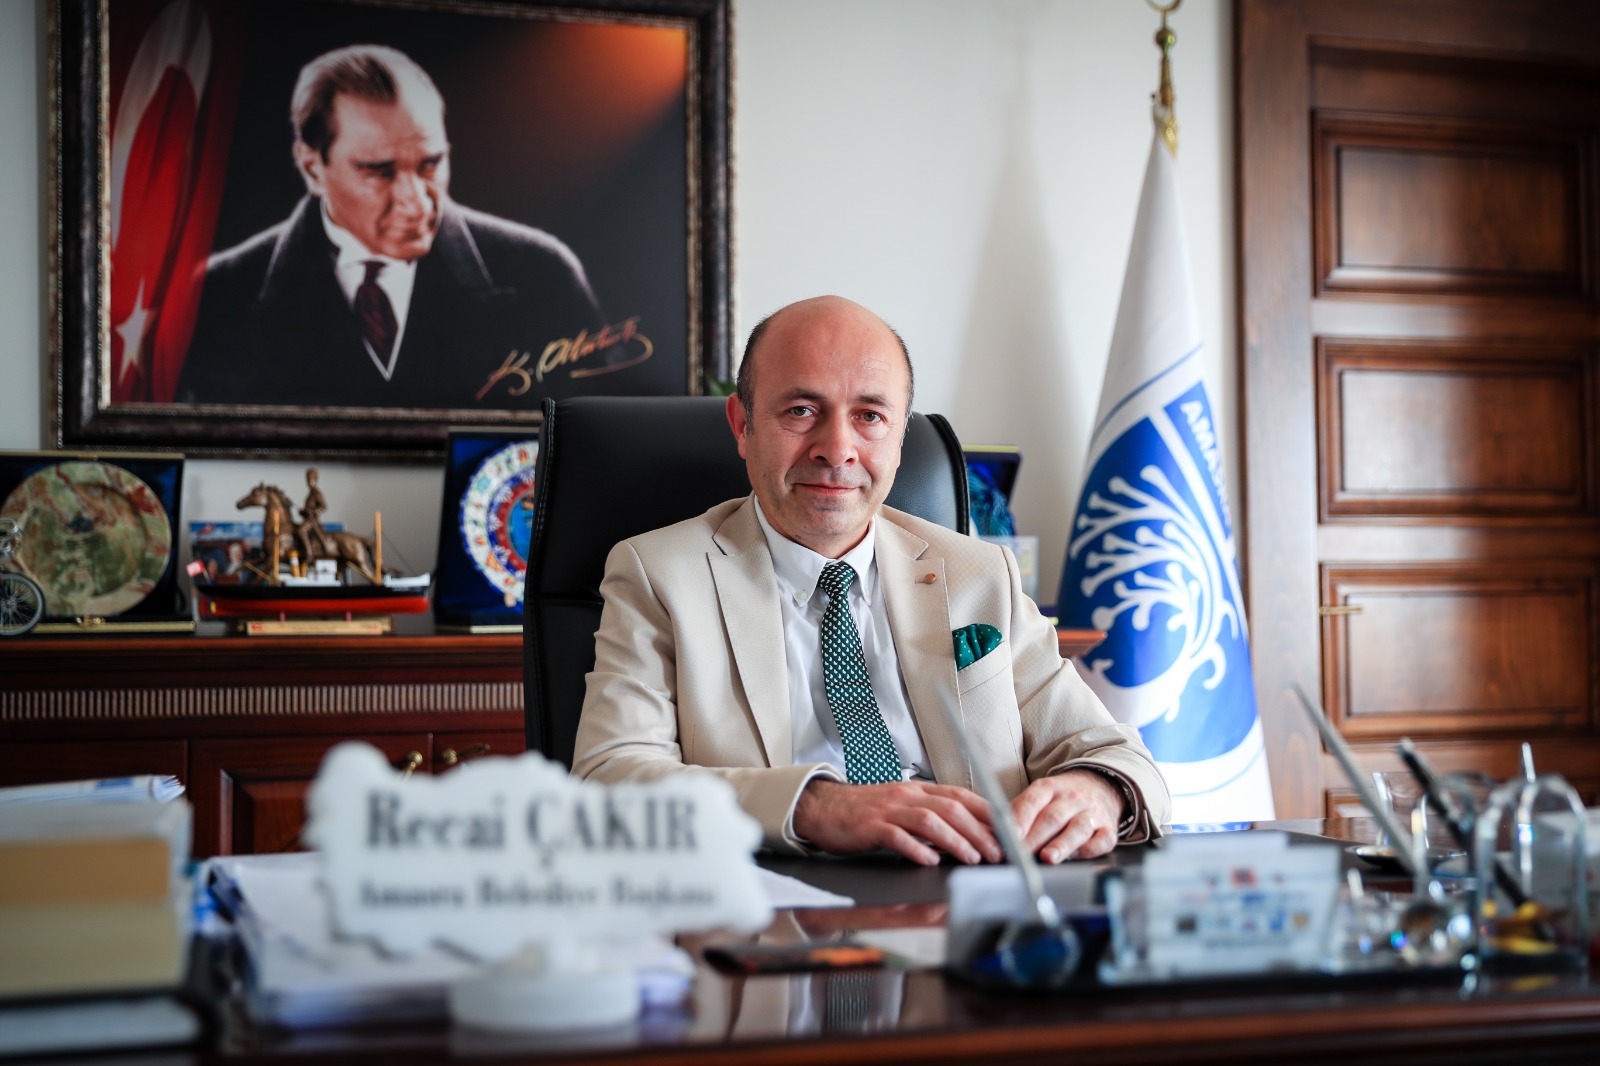  Amasra Belediye Başkanı Çakır, 19 Mayıs Bayram Mesajı Yayımladı